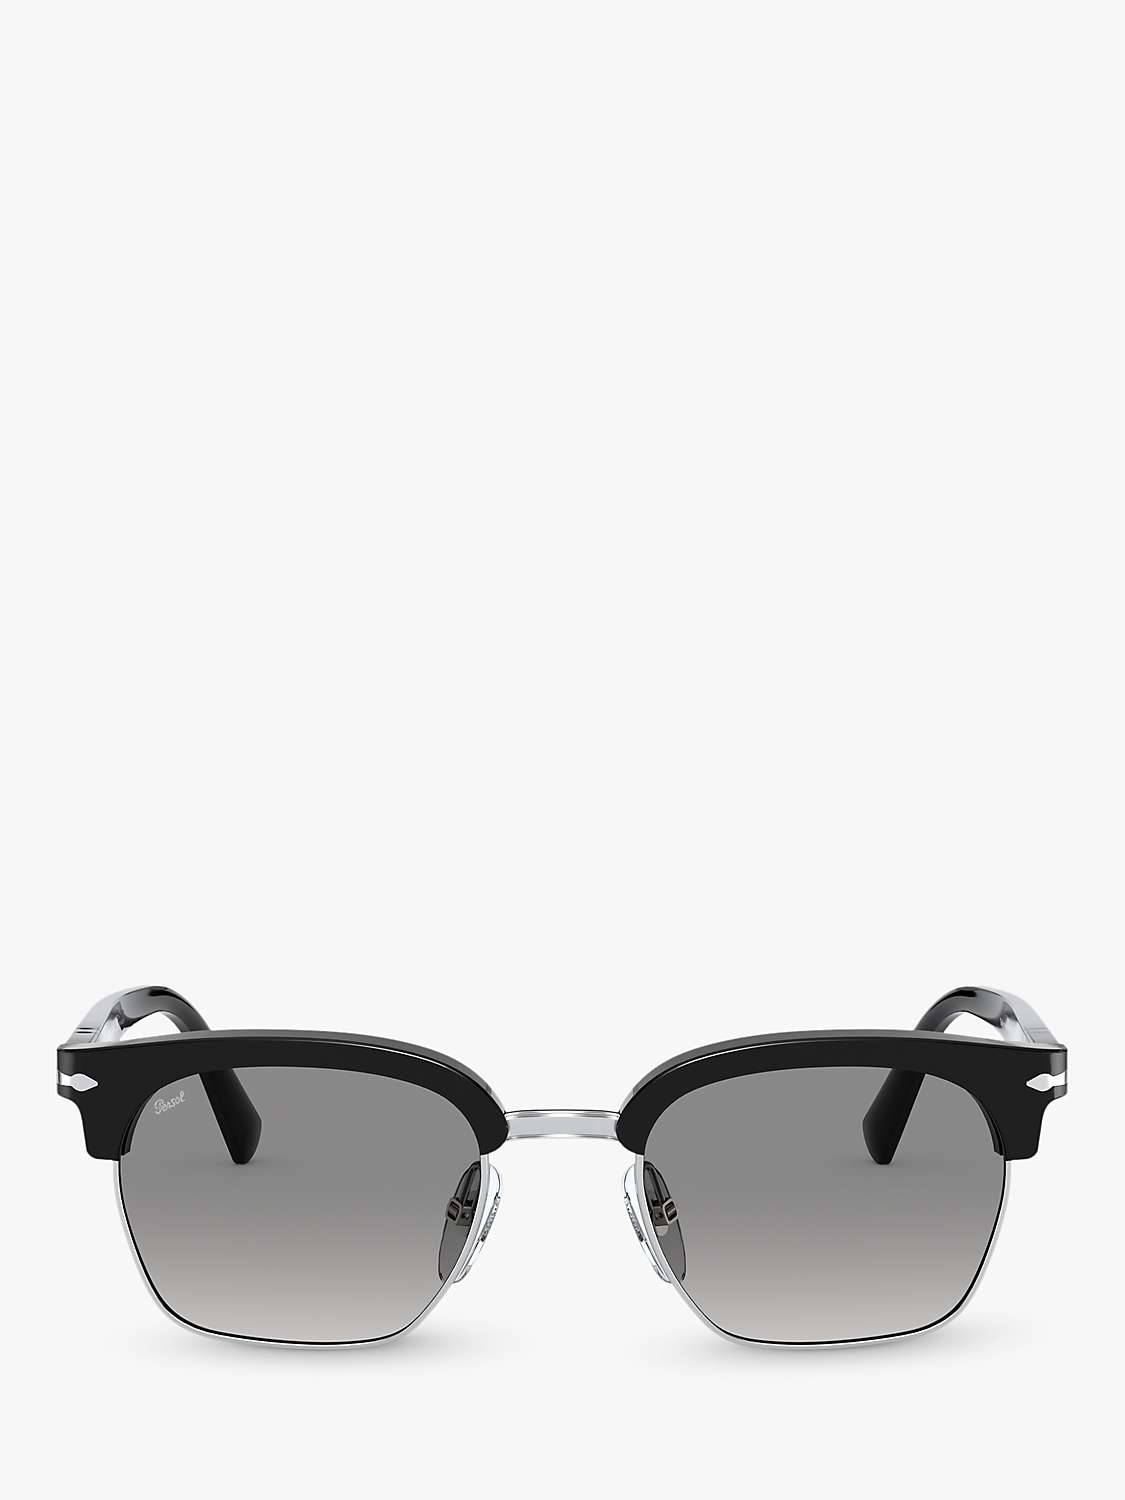 Buy Persol PO3199S Unisex Polarised Square Sunglasses, Black/Grey Gradient Online at johnlewis.com